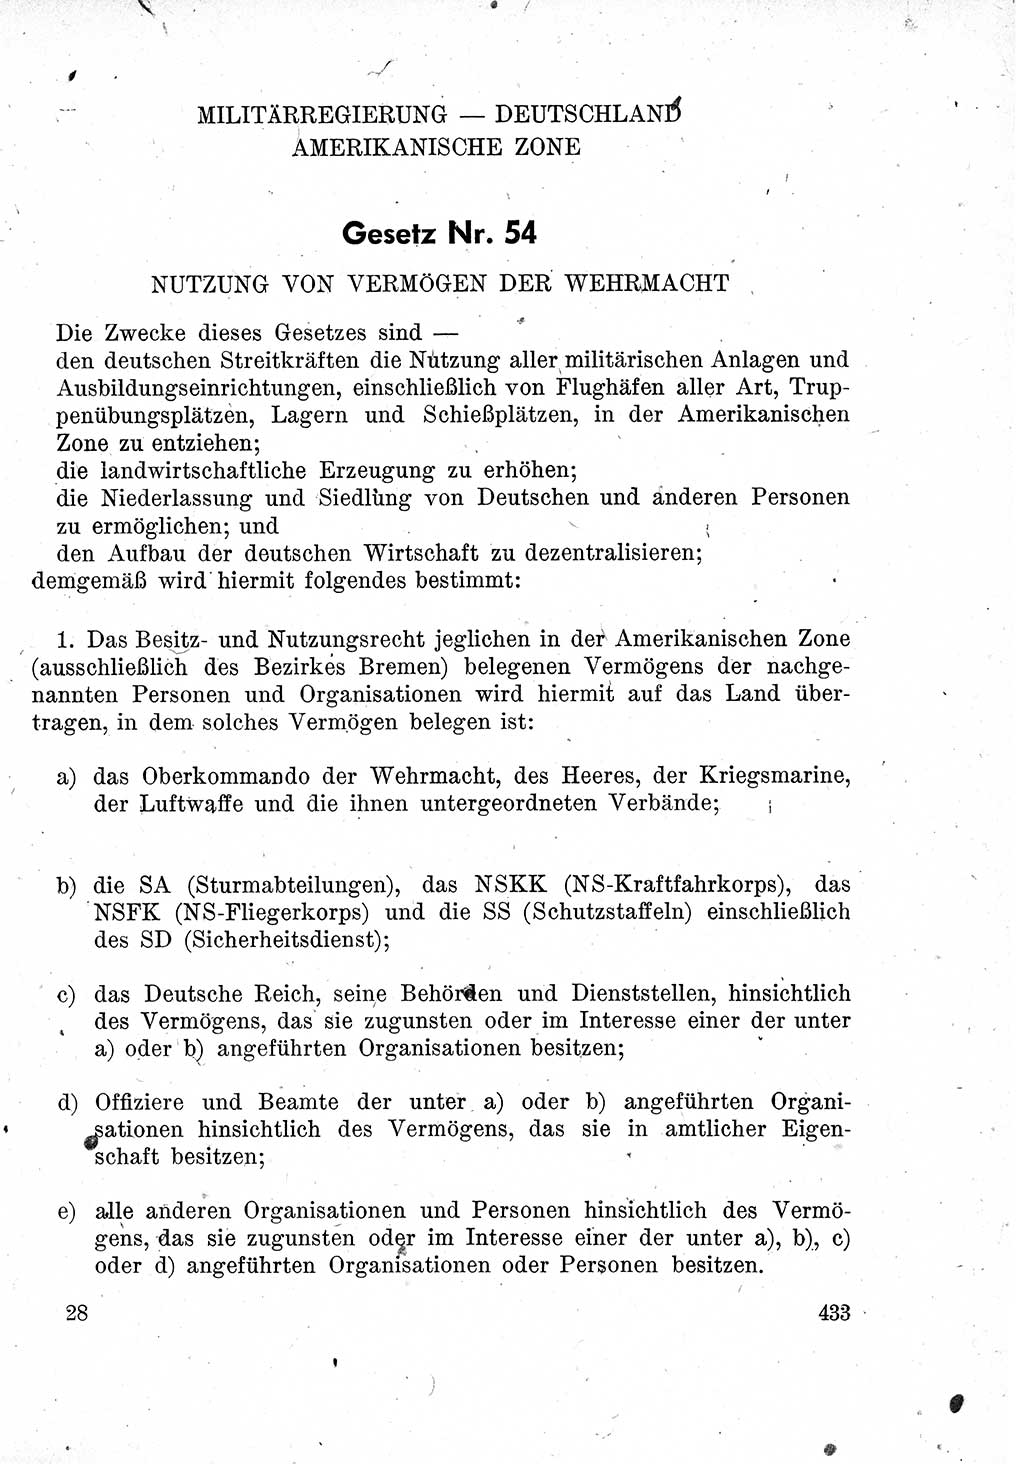 Das Recht der Besatzungsmacht (Deutschland), Proklamationen, Deklerationen, Verordnungen, Gesetze und Bekanntmachungen 1947, Seite 433 (R. Bes. Dtl. 1947, S. 433)